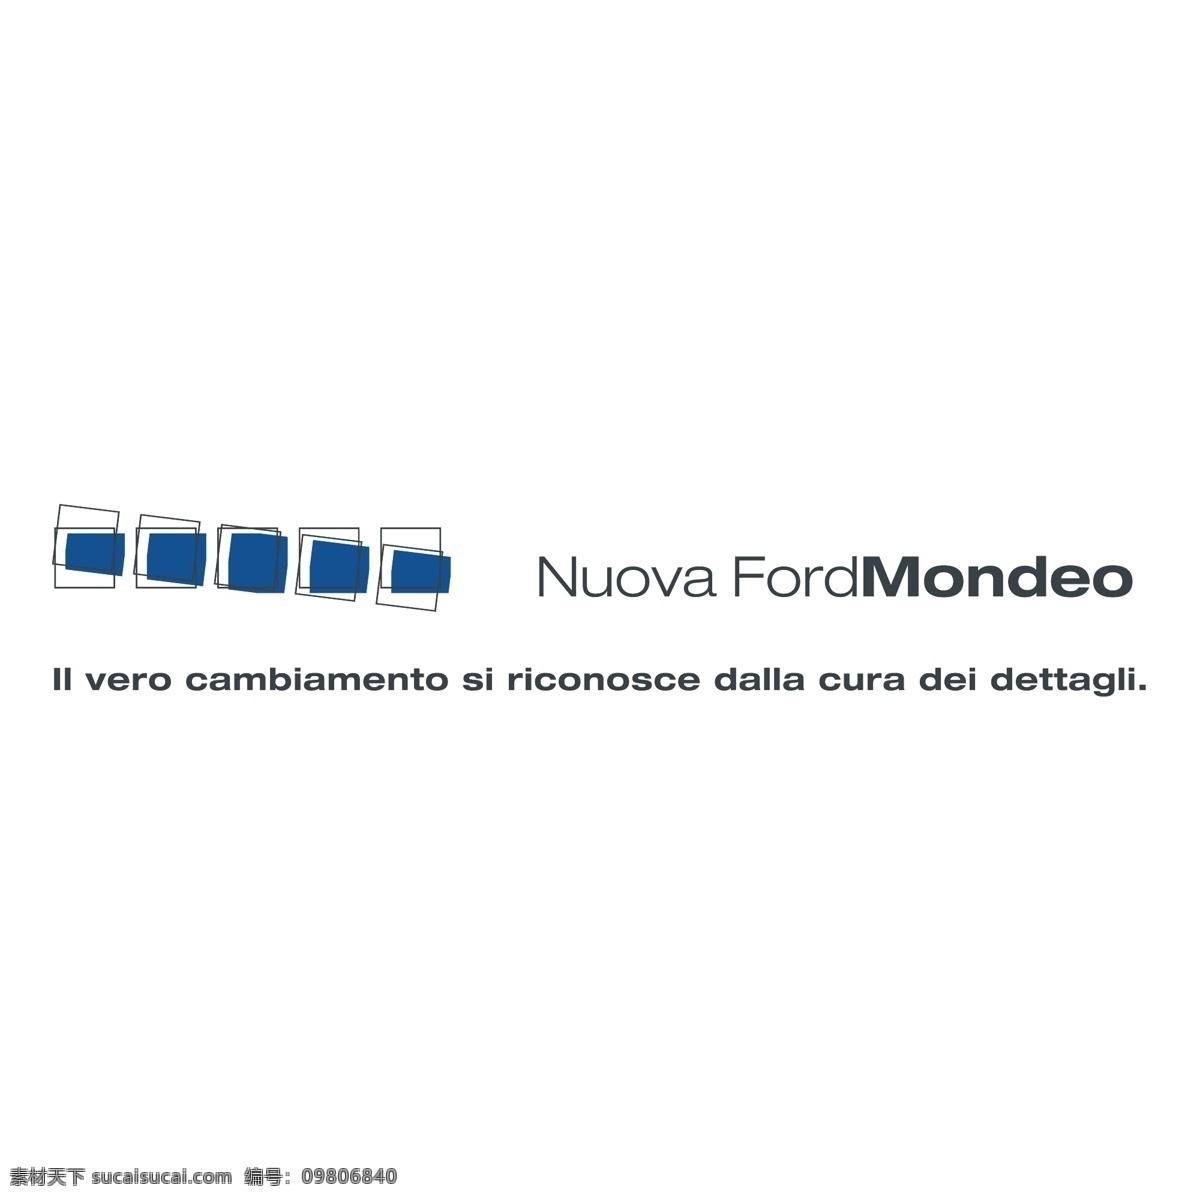 新 福特 蒙迪欧 免费 标志 psd源文件 logo设计